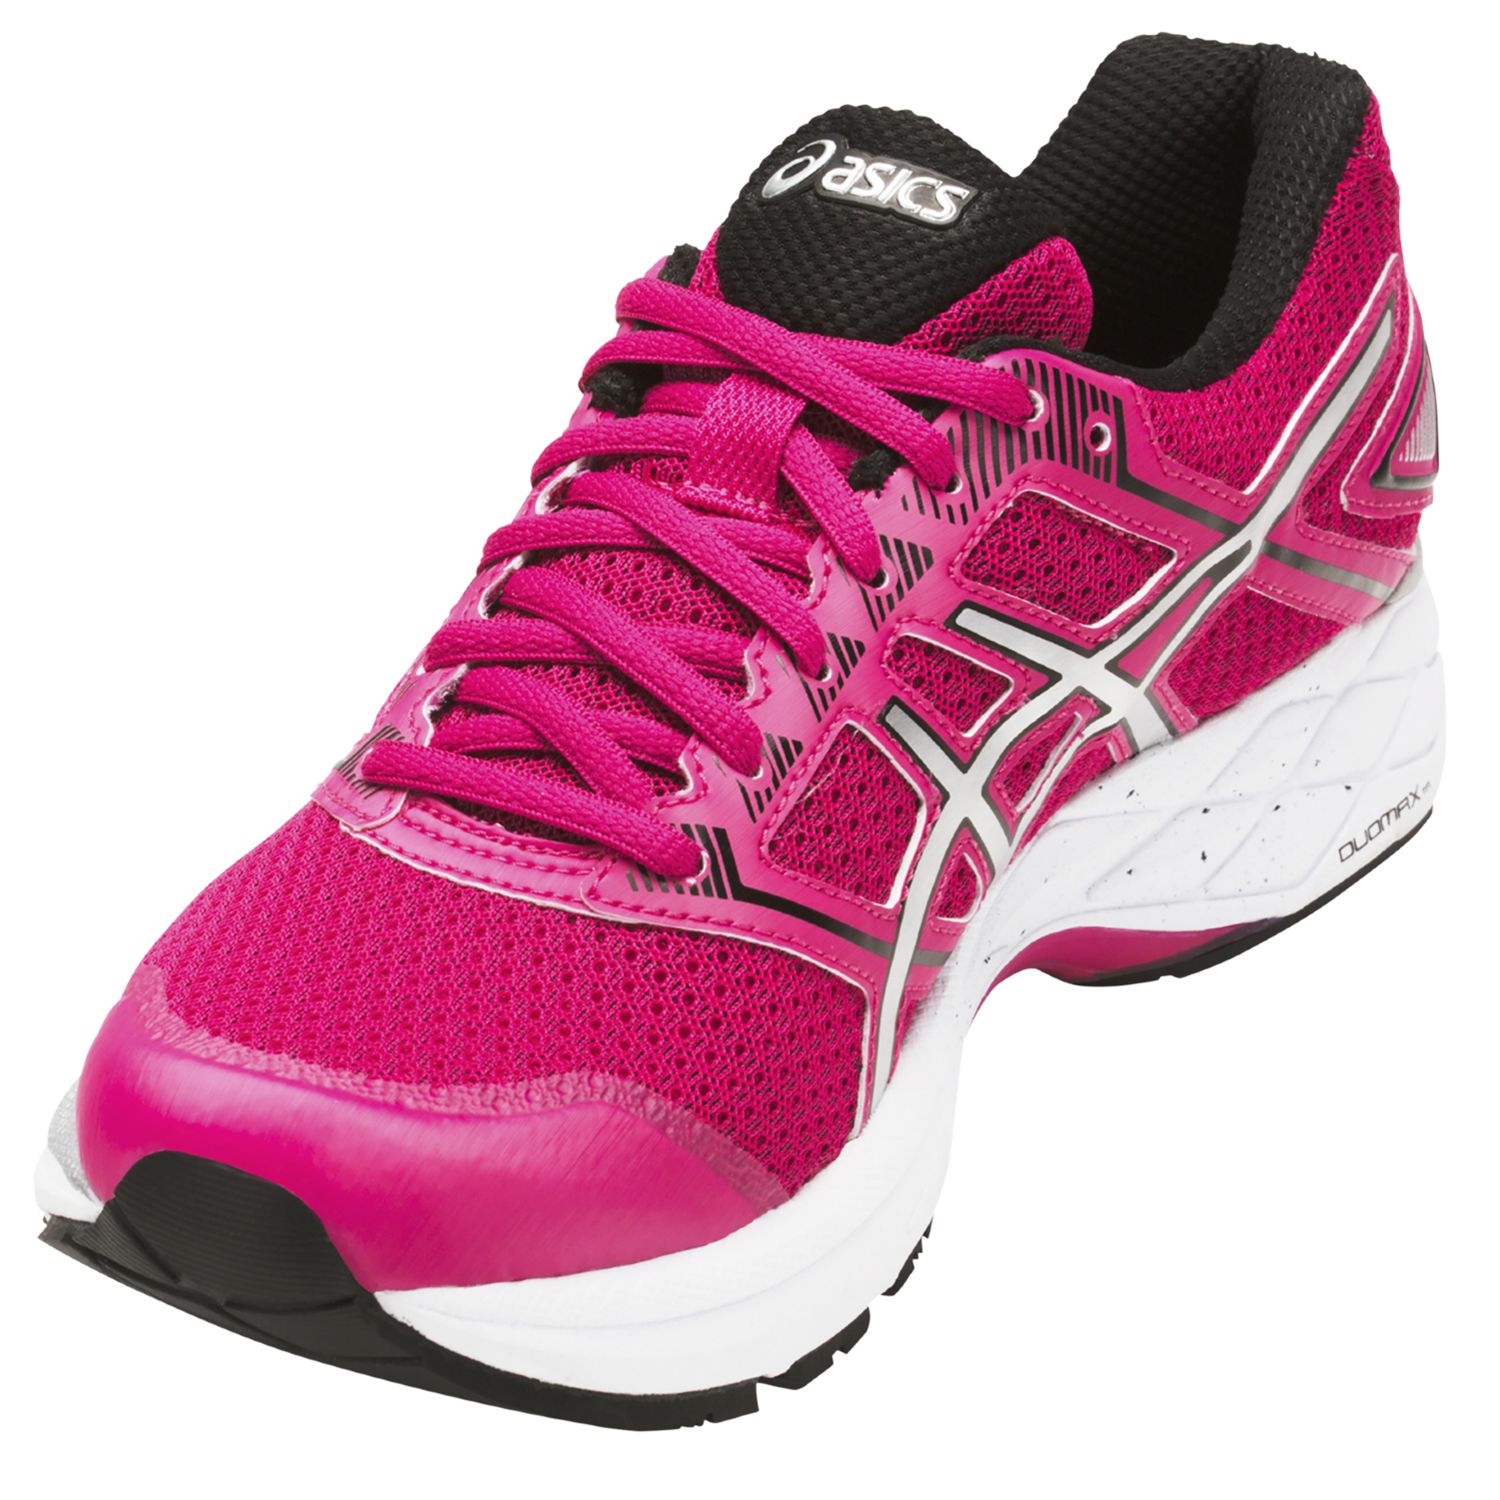 Asics GEL-PHOENIX 8 Women's Running Shoes, Pink/Silver, 4